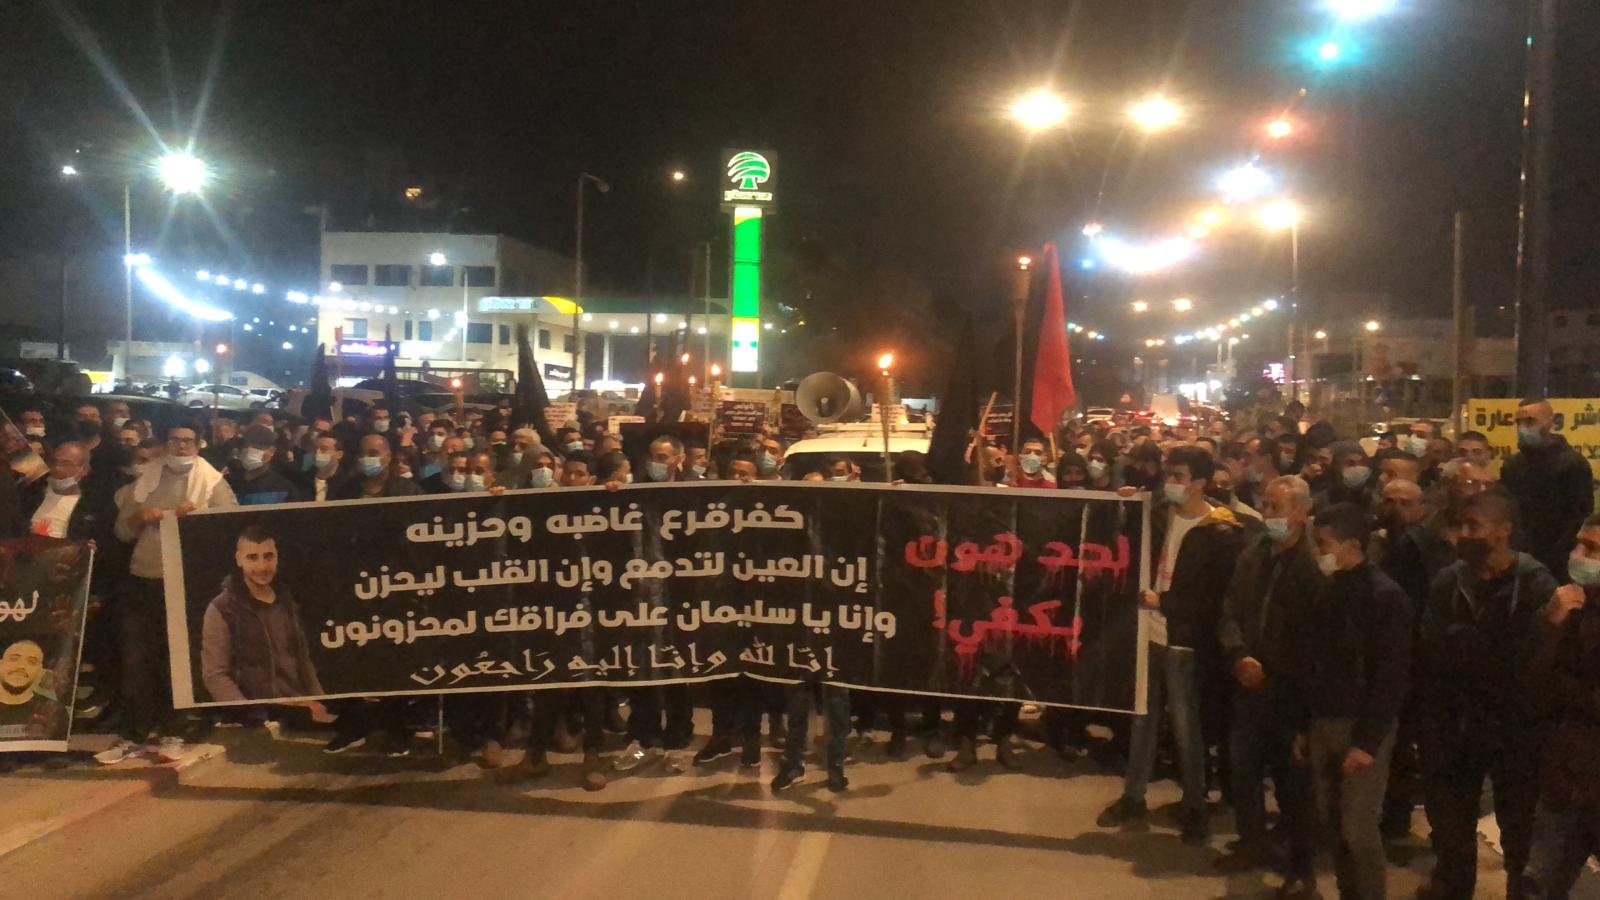 مباشر: كفرقرع تتظاهر ضد العنف واغلاق شارع 65-16